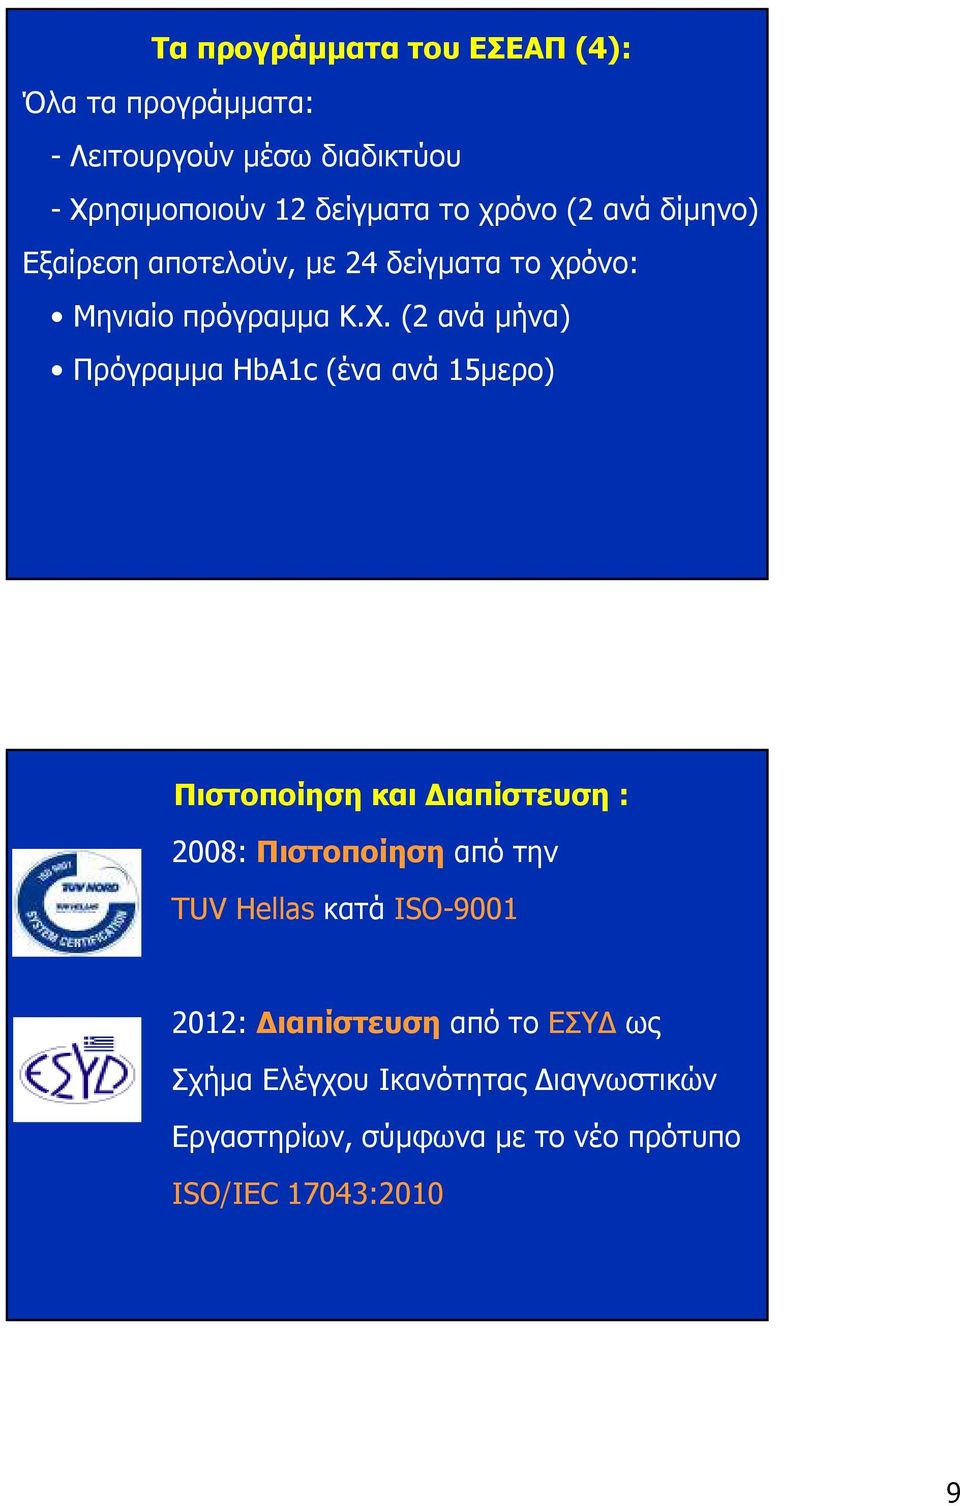 (2 ανά µήνα) Πρόγραµµα HbA1c (ένα ανά 15µερο) Πιστοποίηση και ιαπίστευση : 2008: Πιστοποίηση από την TUV Hellas